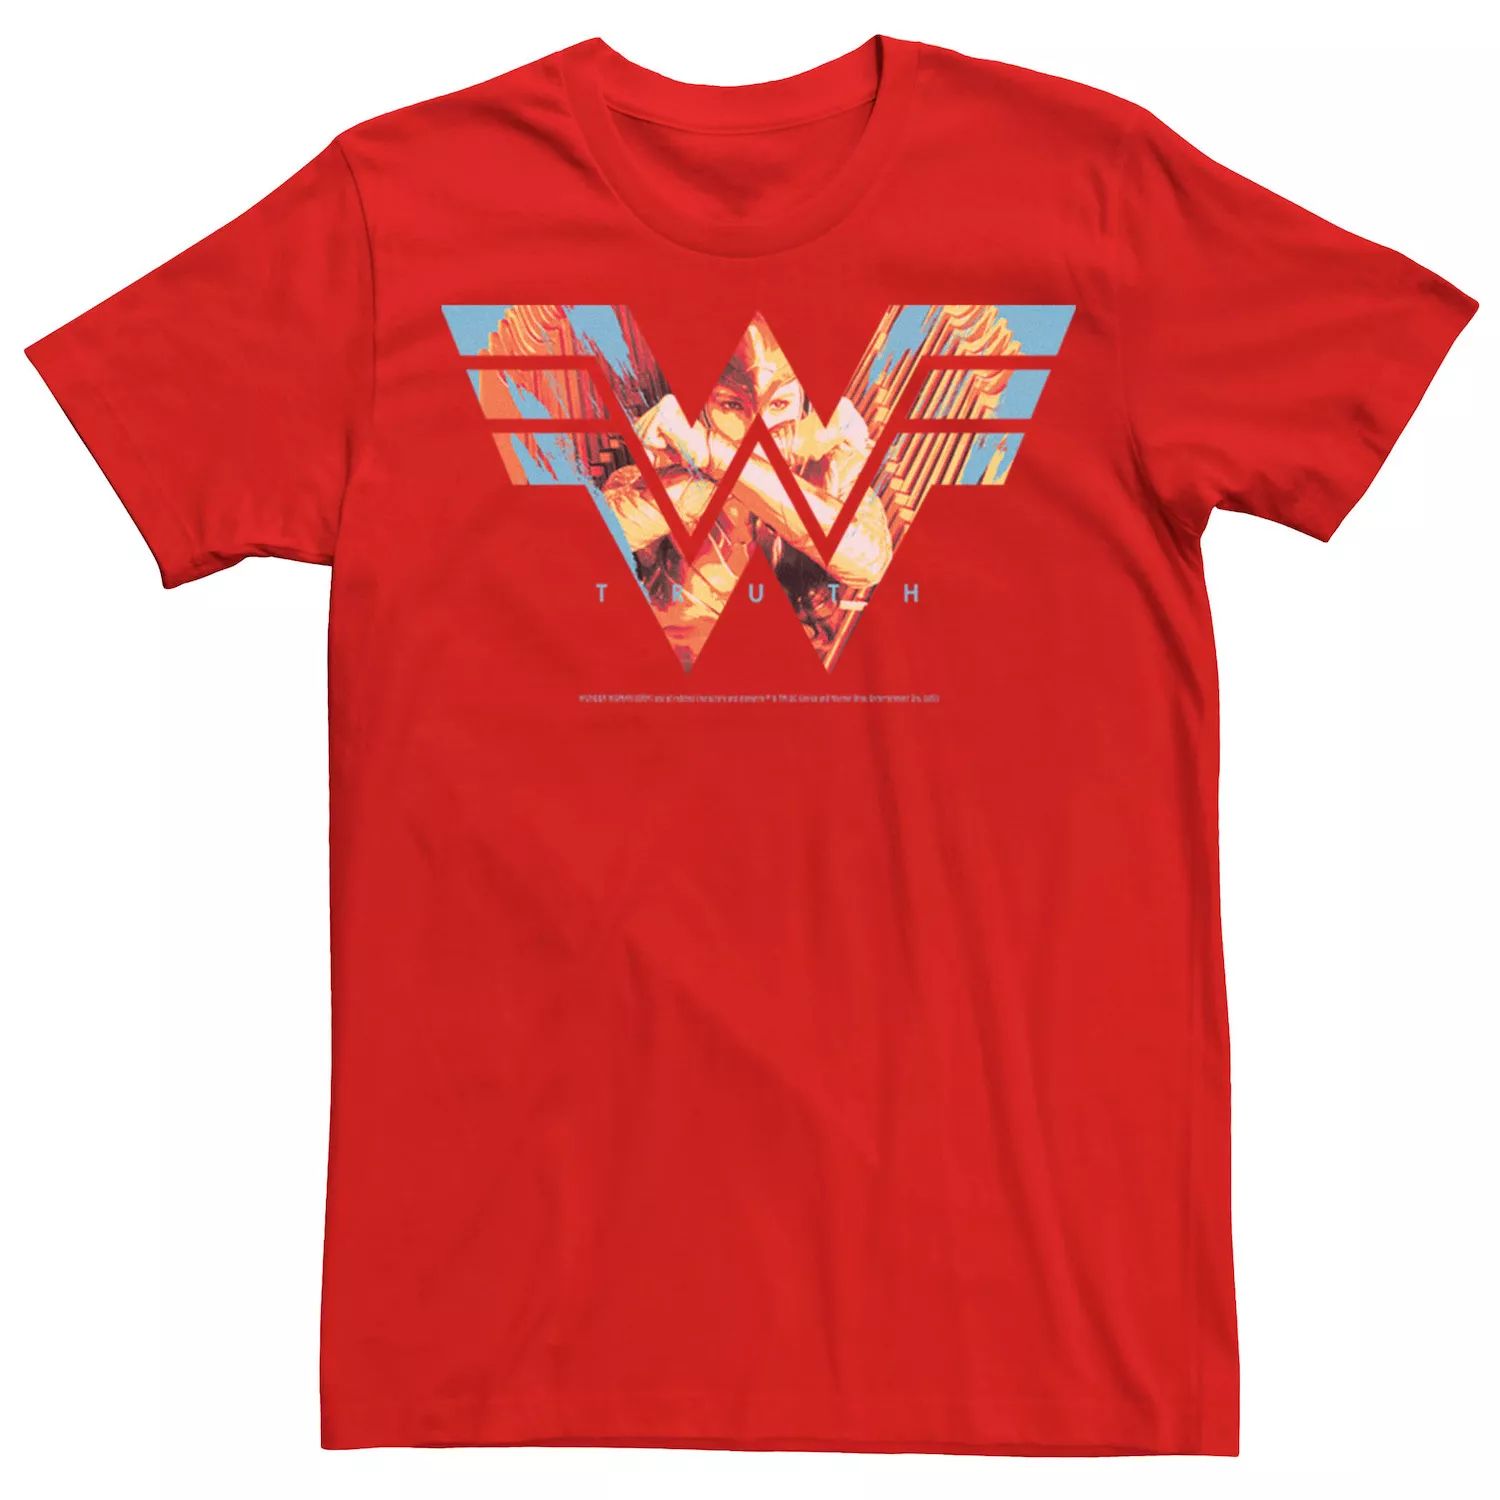 Мужская футболка с логотипом Wonder Woman Eagle Truth DC Comics